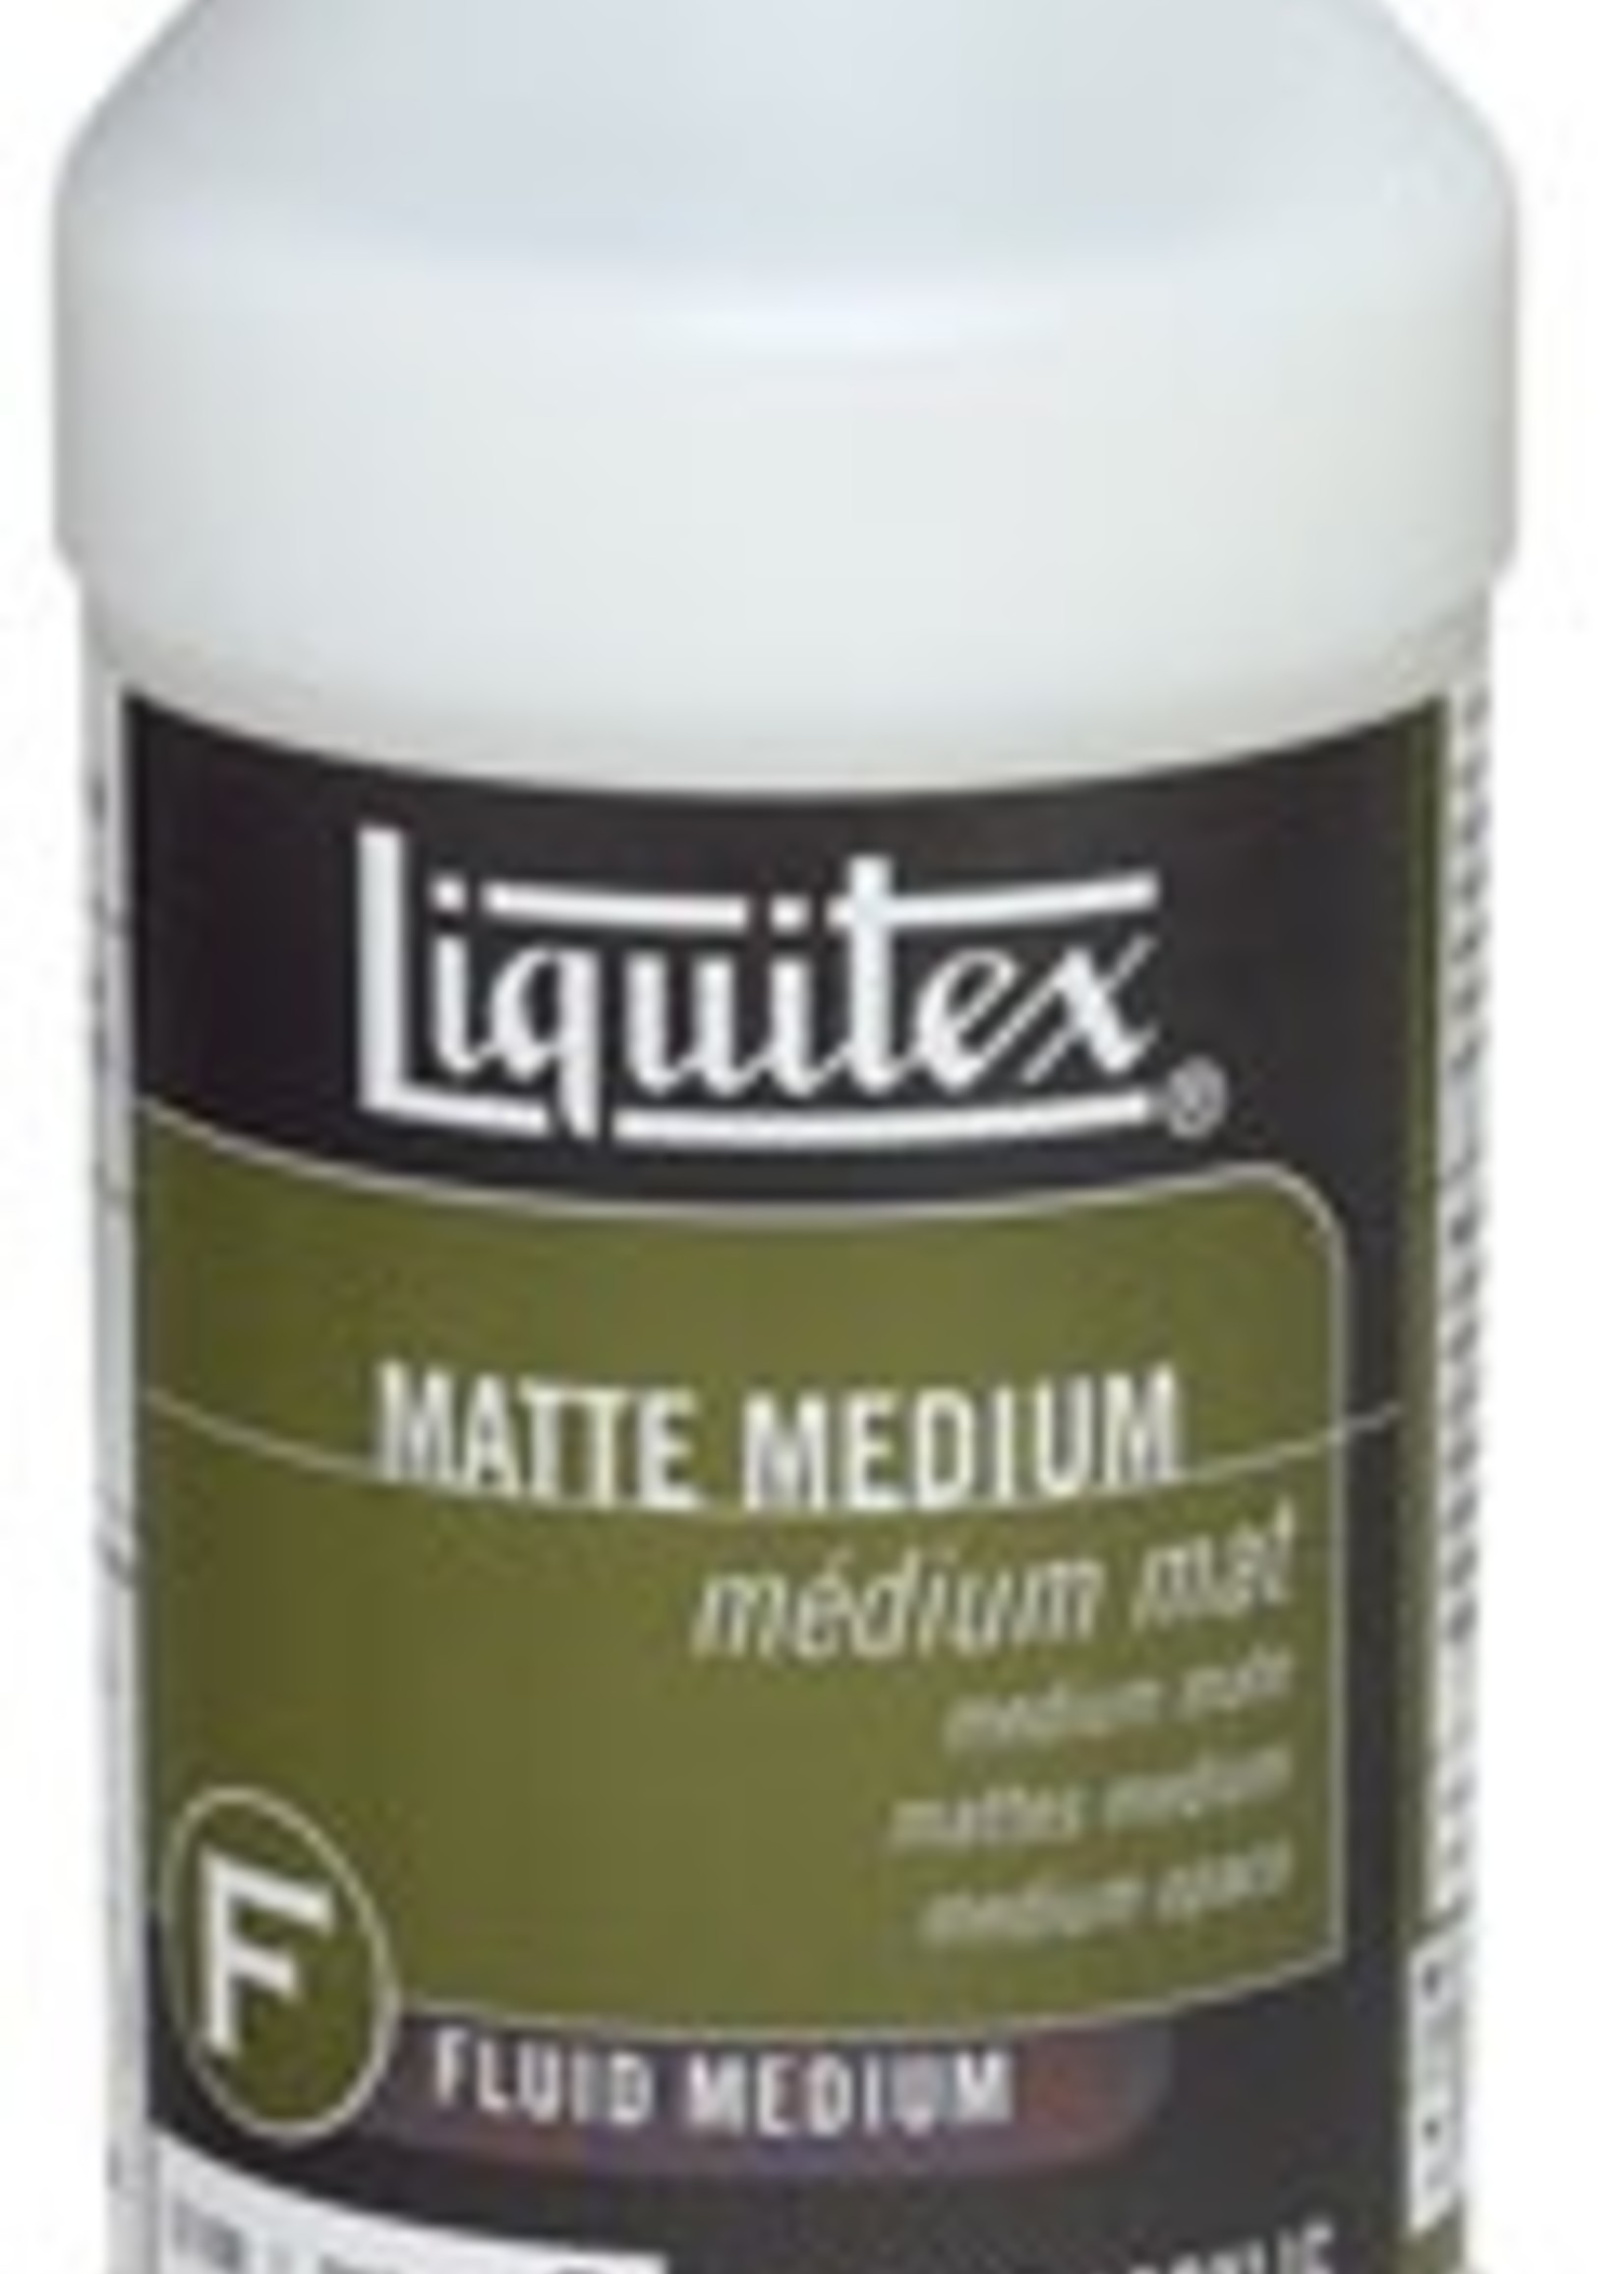 LIQUITEX LIQUITEX MATTE MEDIUM 32OZ